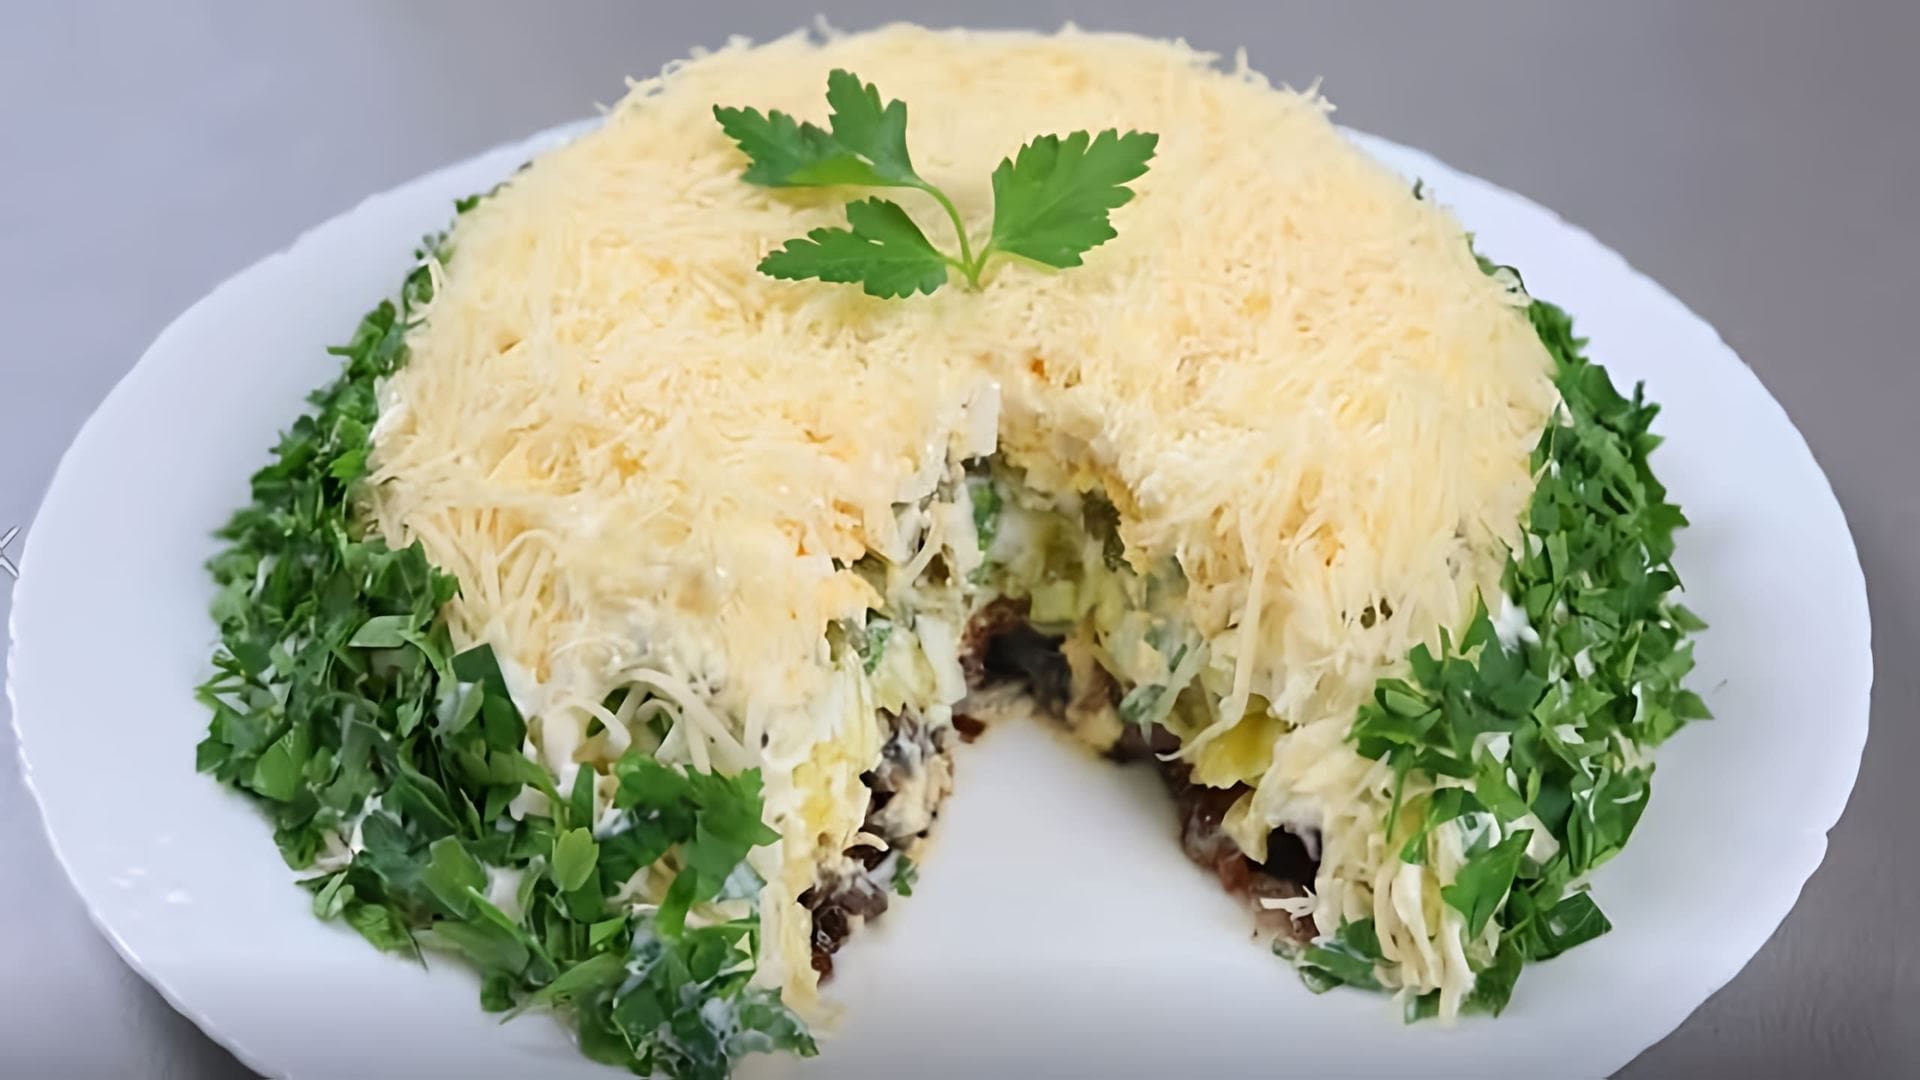 В этом видео демонстрируется процесс приготовления праздничного салата с грибами